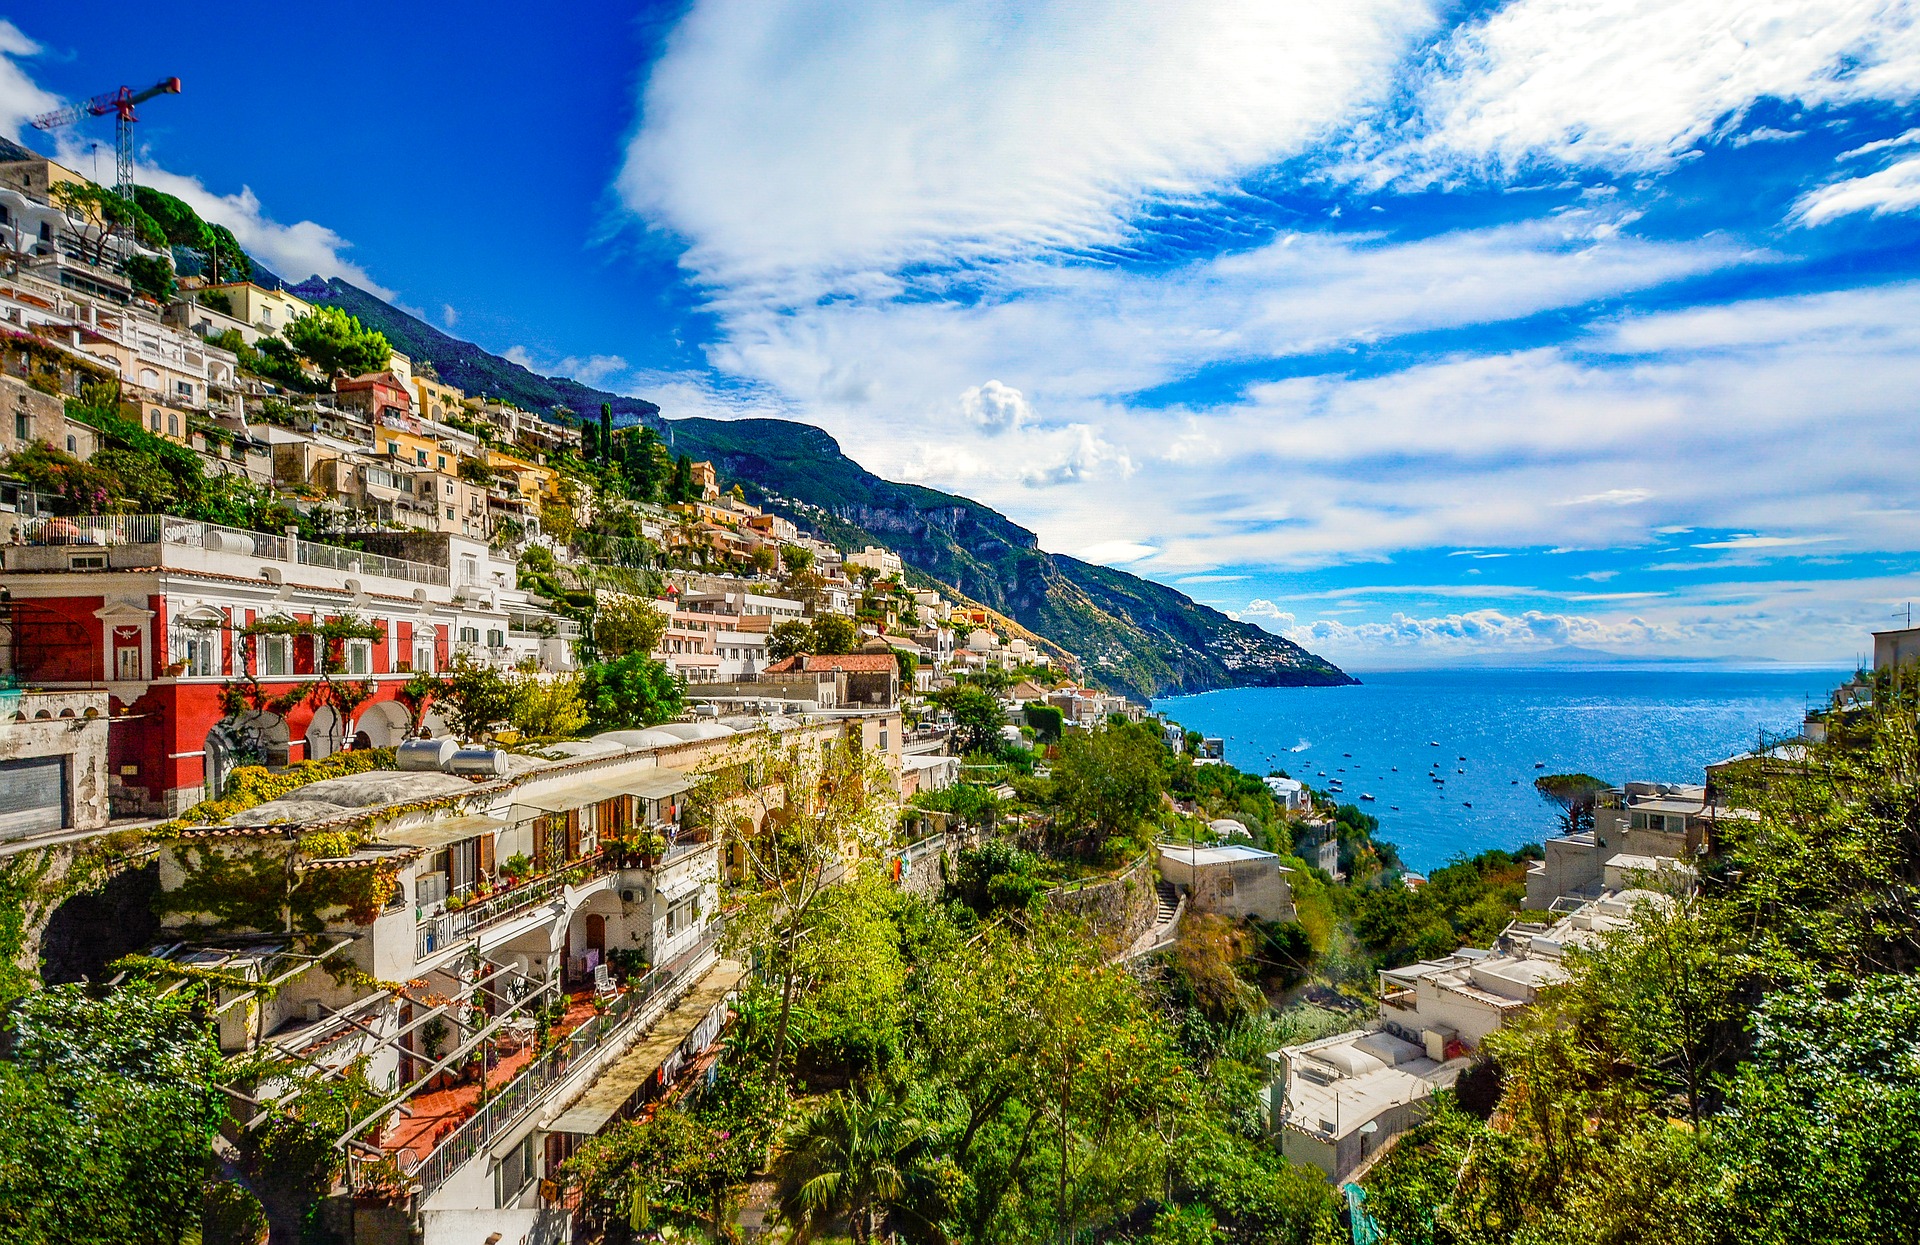 A világ legszebb helyei: Amalfi-part, Olaszország